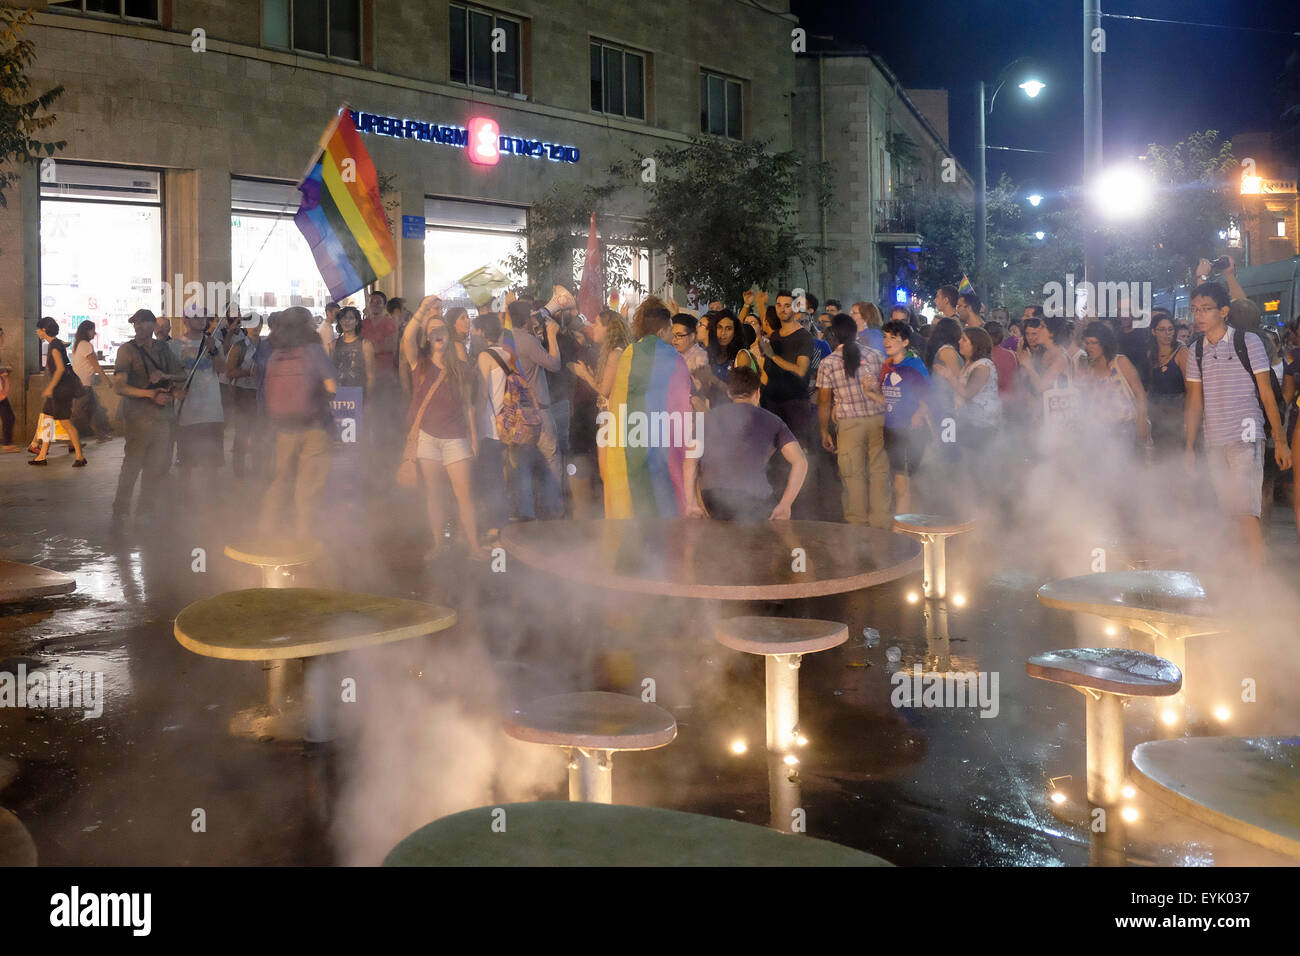 Les partisans de la communauté LGBT marchent dans le centre de Jérusalem après l'incident au cours duquel un juif ultra orthodoxe a poignardé six personnes à la parade de la fierté à Jérusalem en Israël Banque D'Images